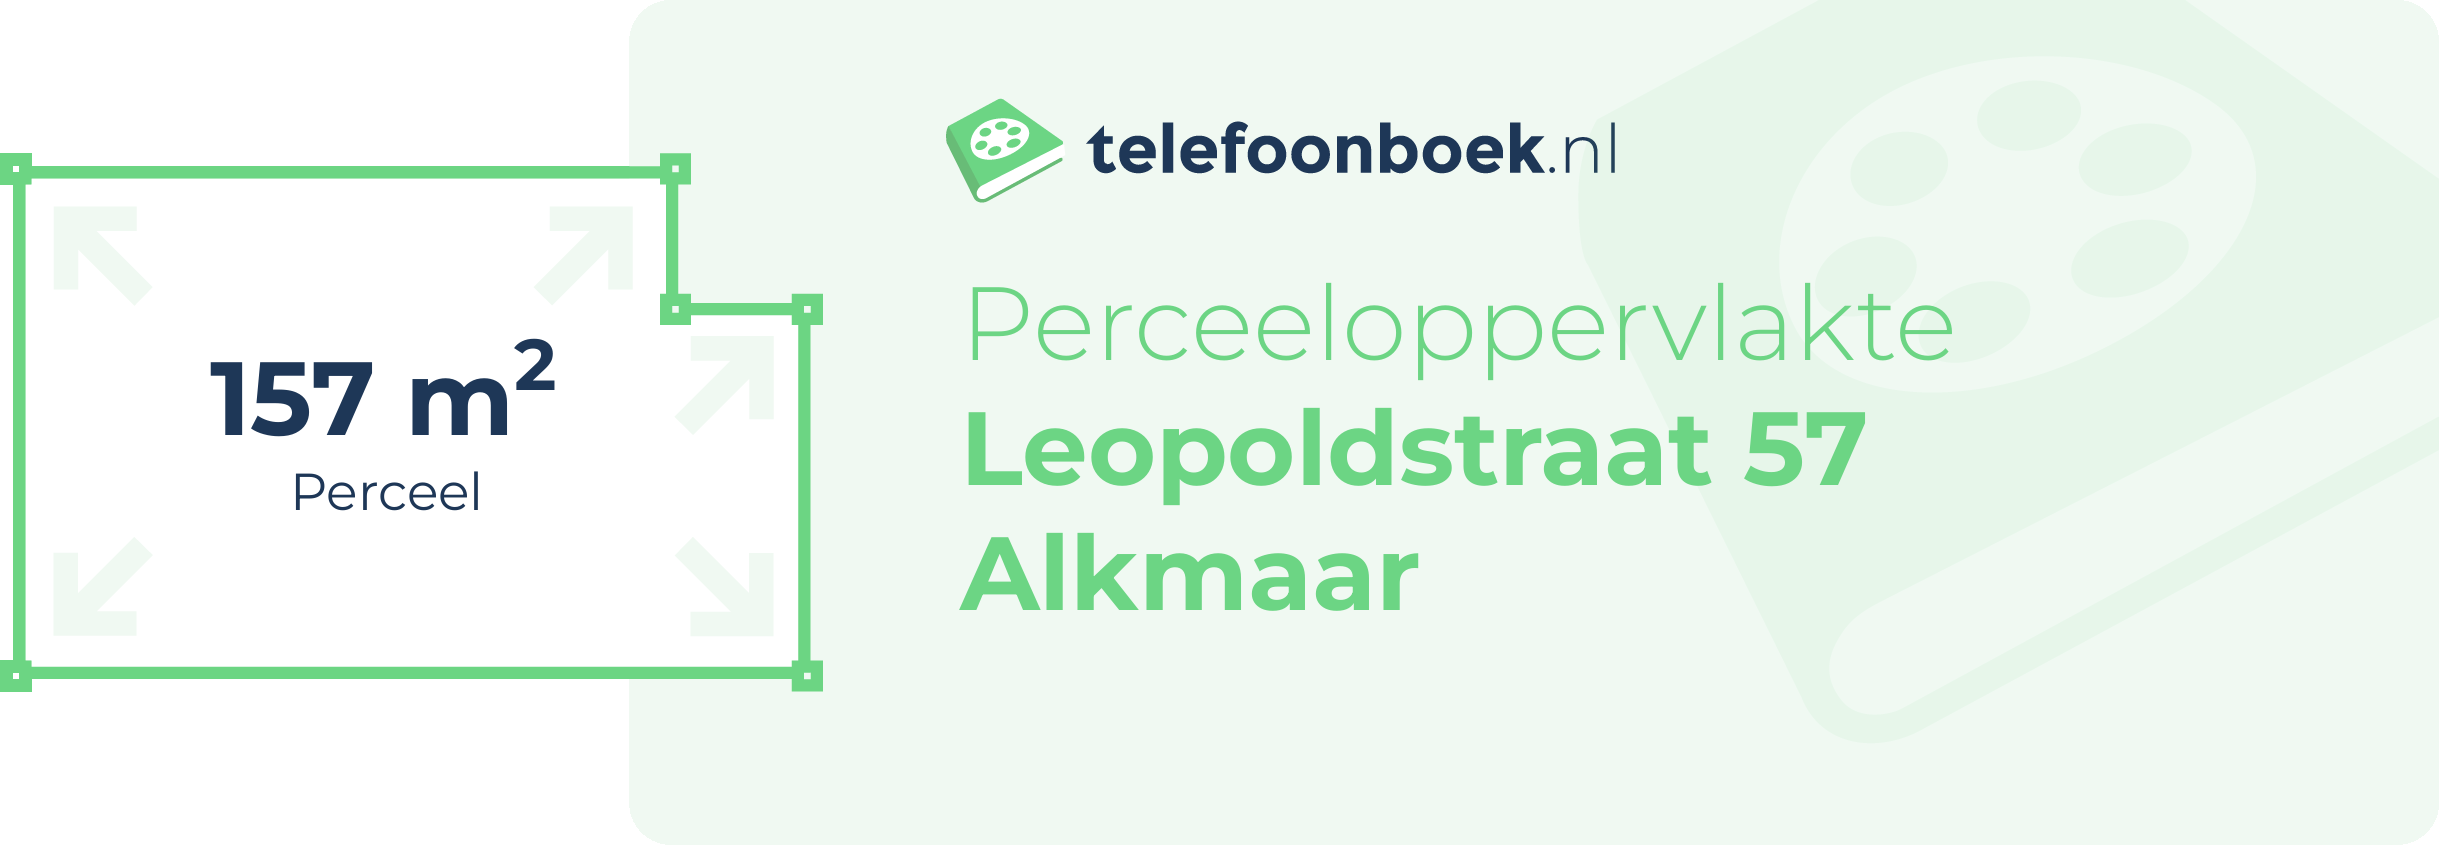 Perceeloppervlakte Leopoldstraat 57 Alkmaar